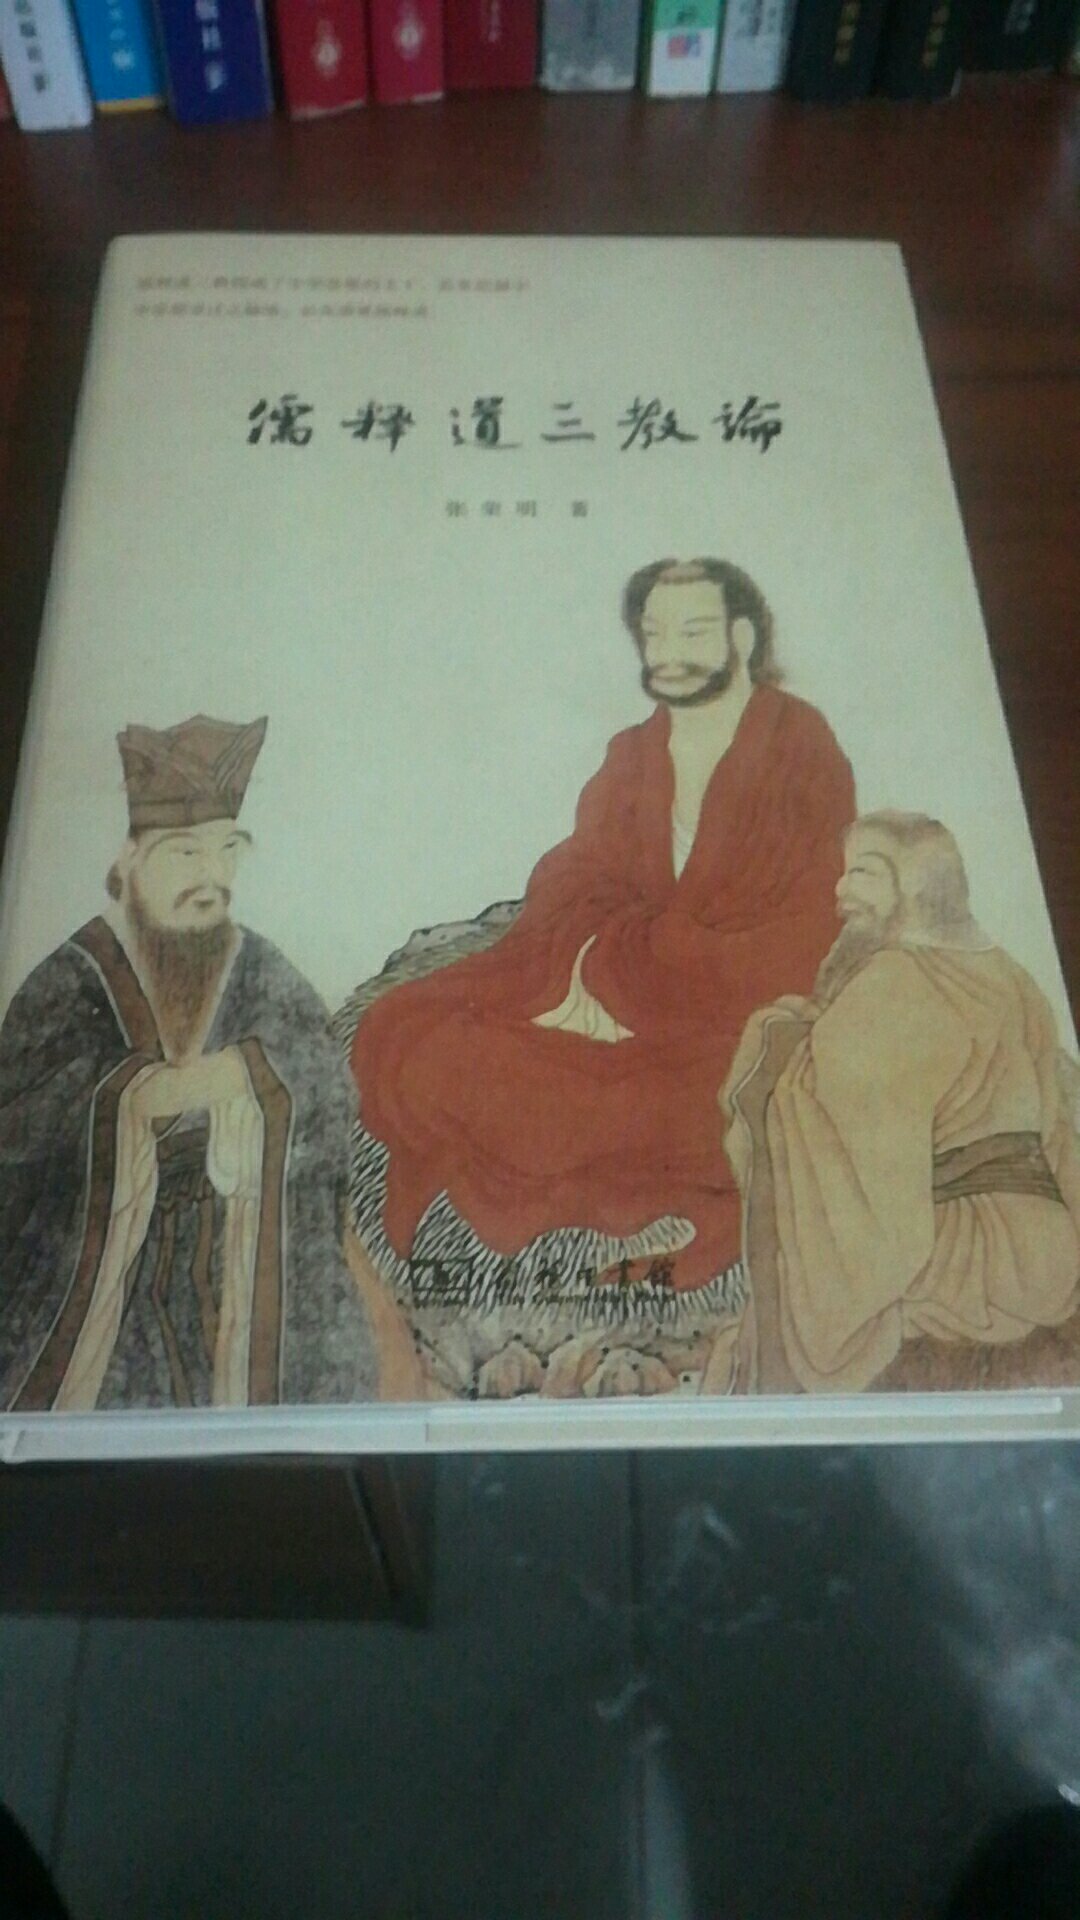 书的内容和质量都不错，结合历史深度剖析儒释道整体构成中国传统文化的核心，想了解中国的文化精髓必读！